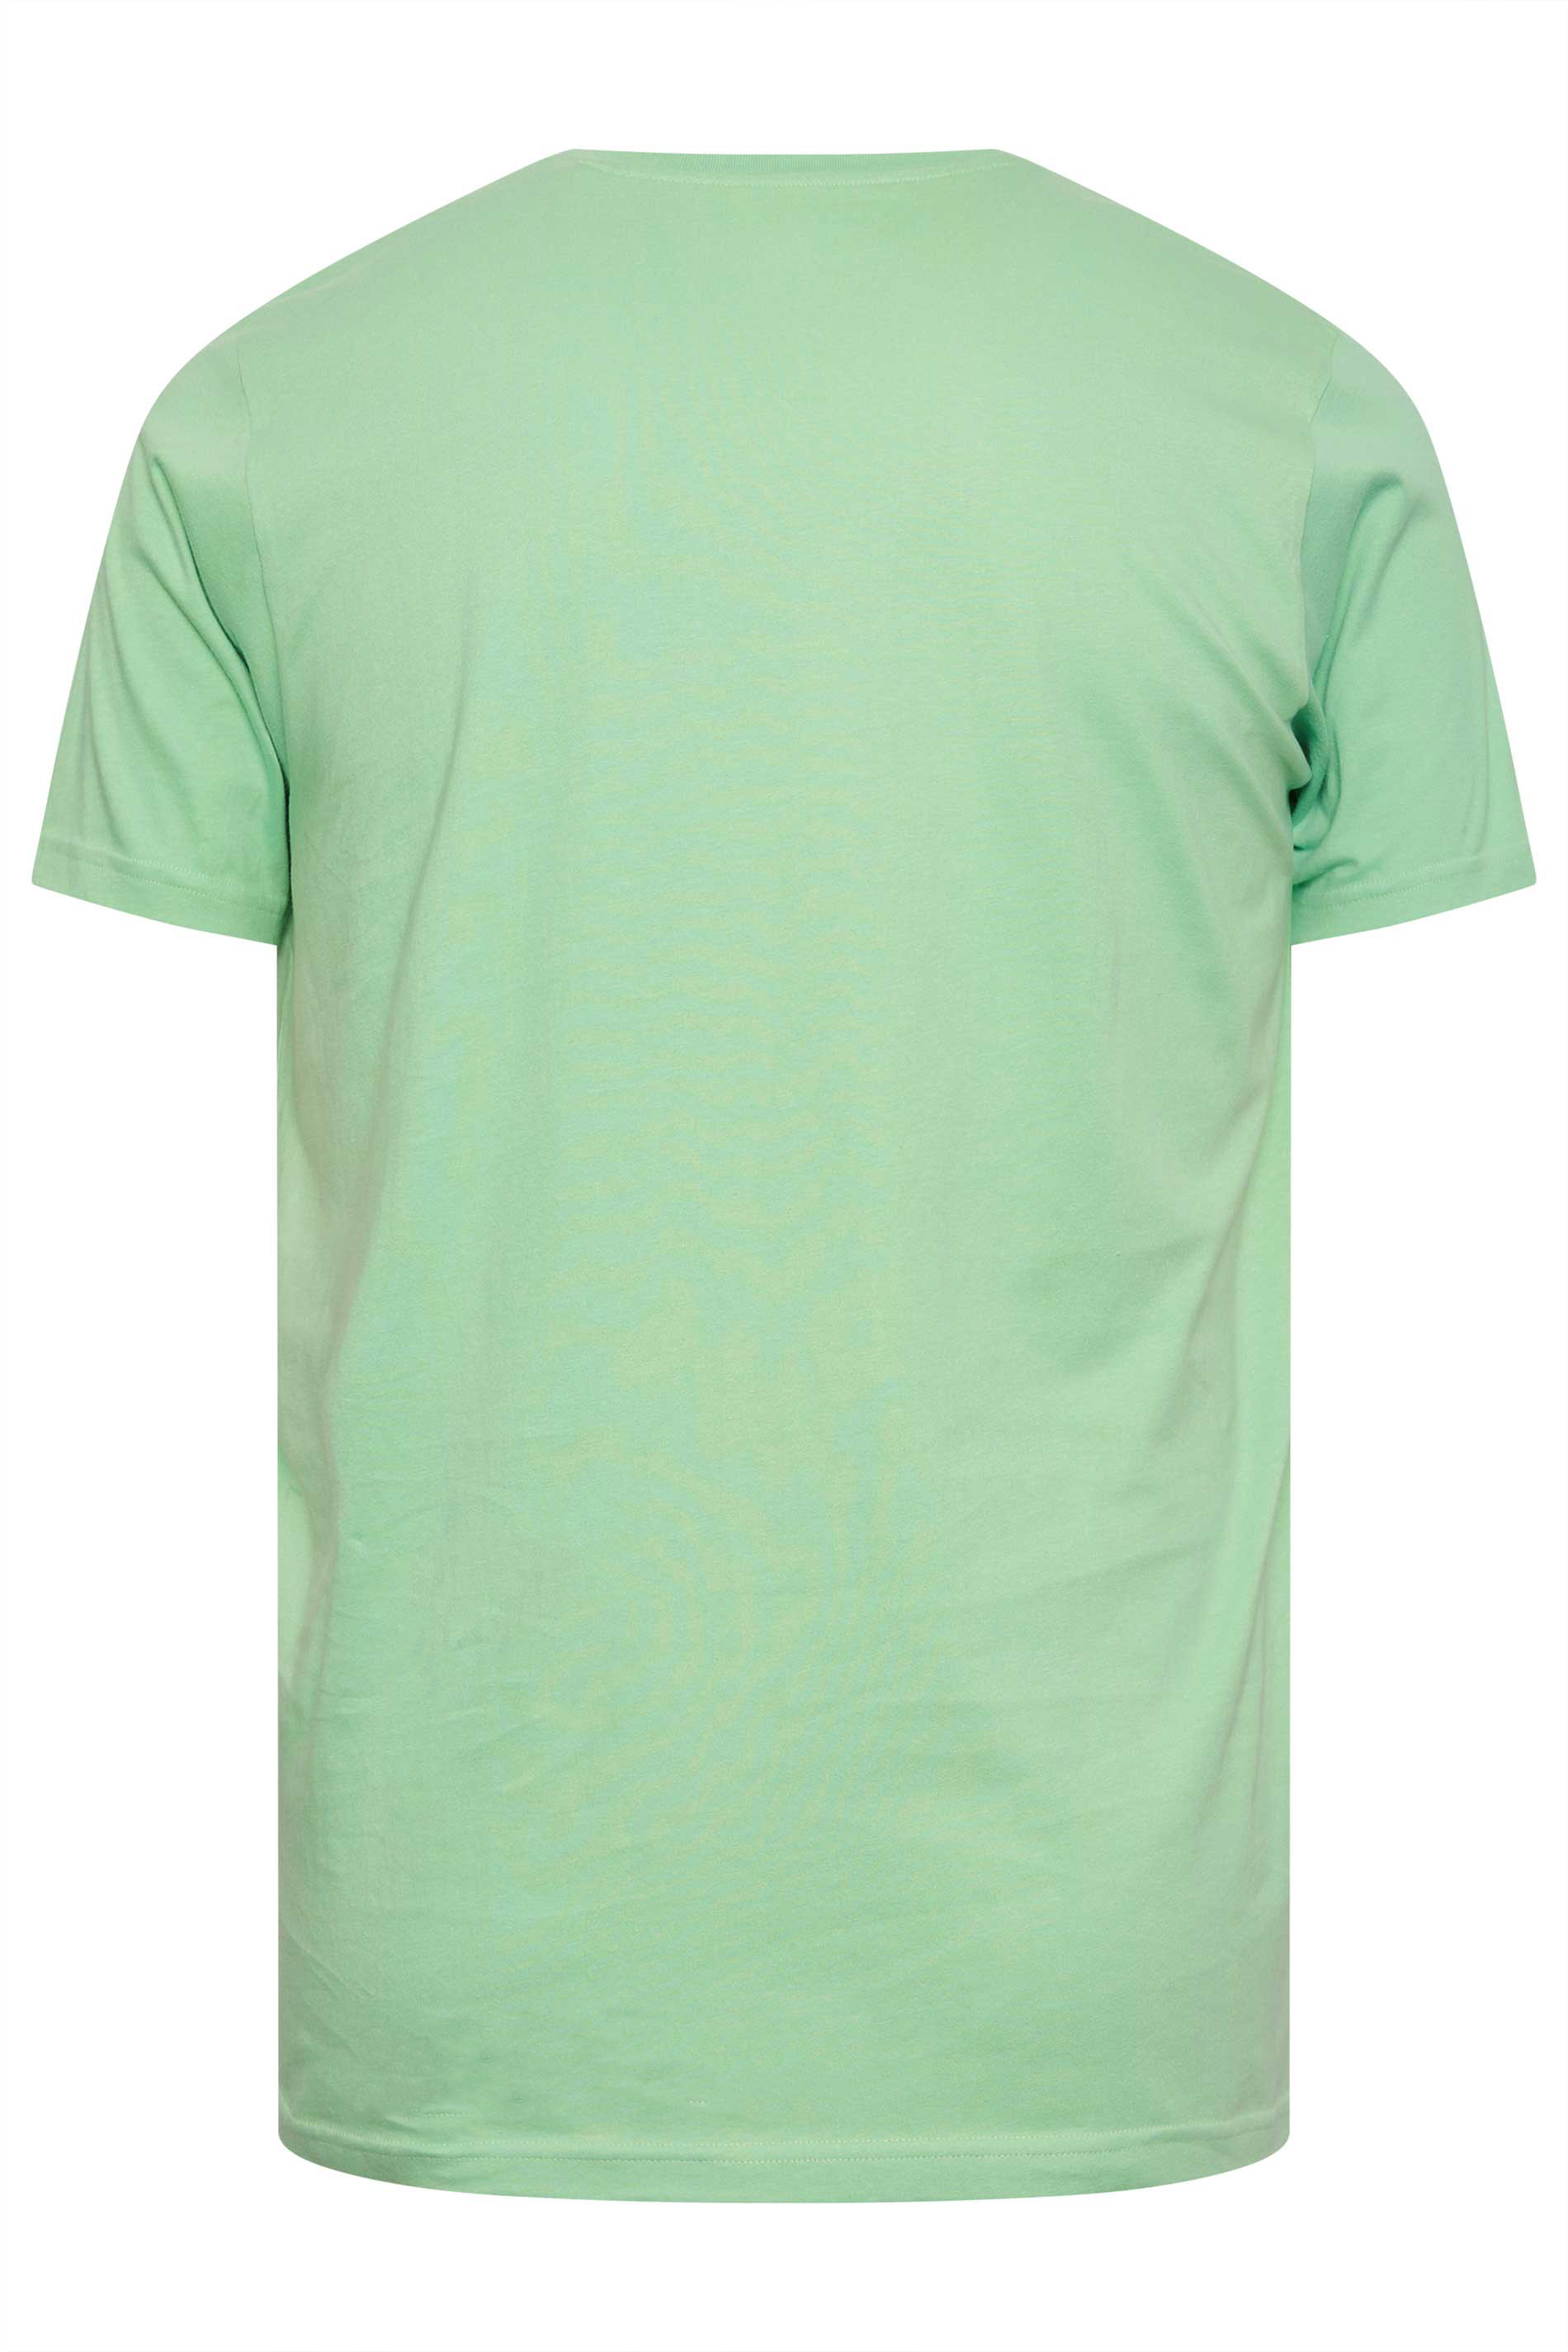 BadRhino Big & Tall Hemlock Green T-Shirt | BadRhino 3